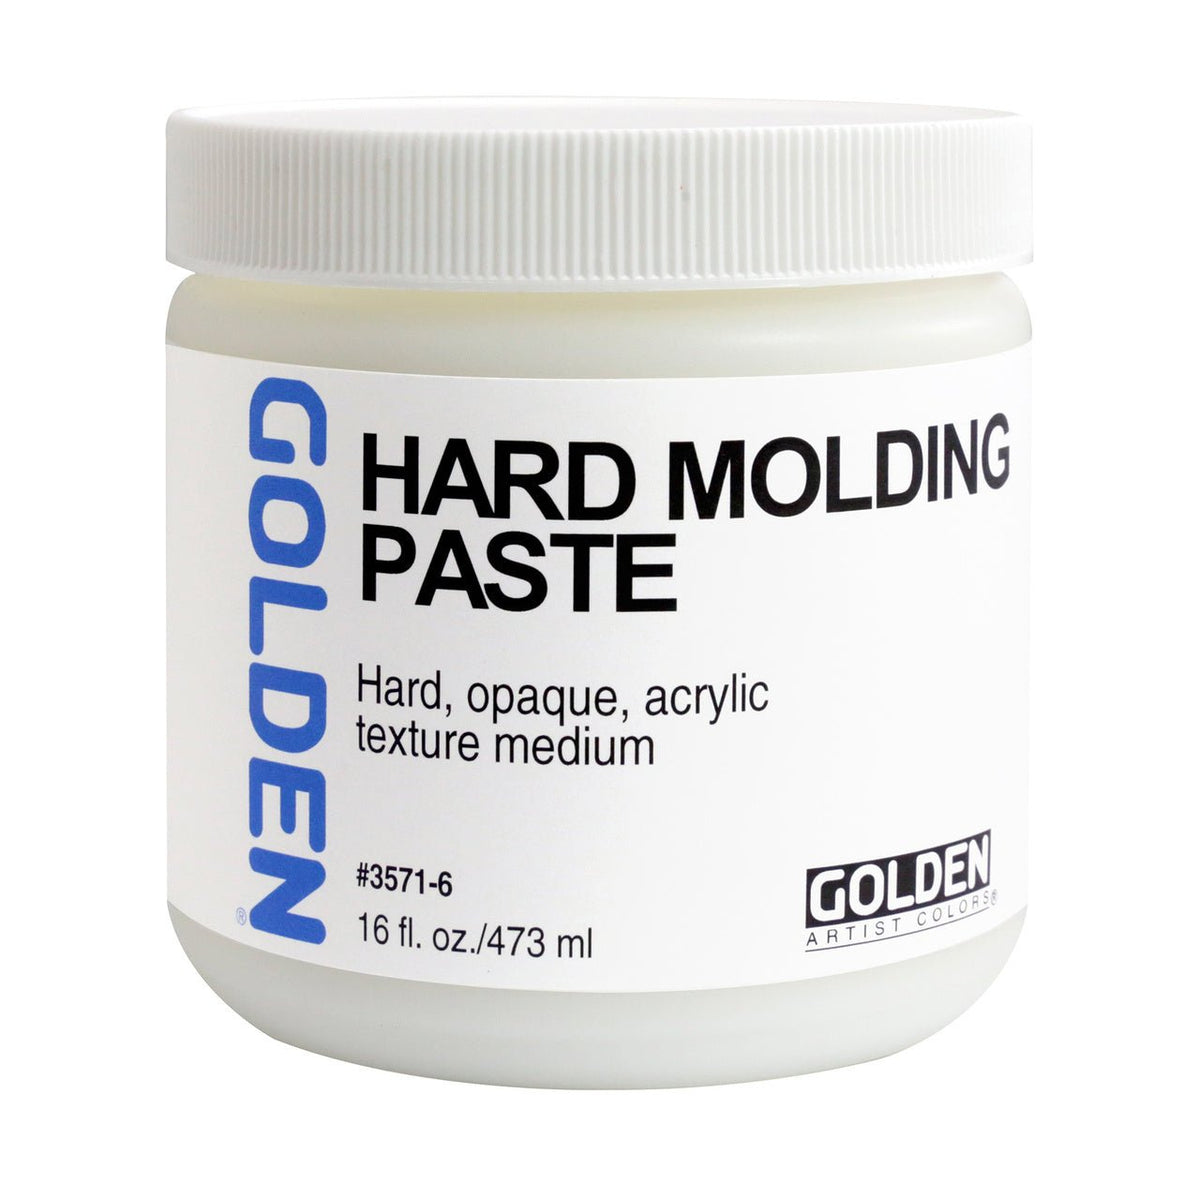 Golden Hard Molding Paste 16 oz - merriartist.com